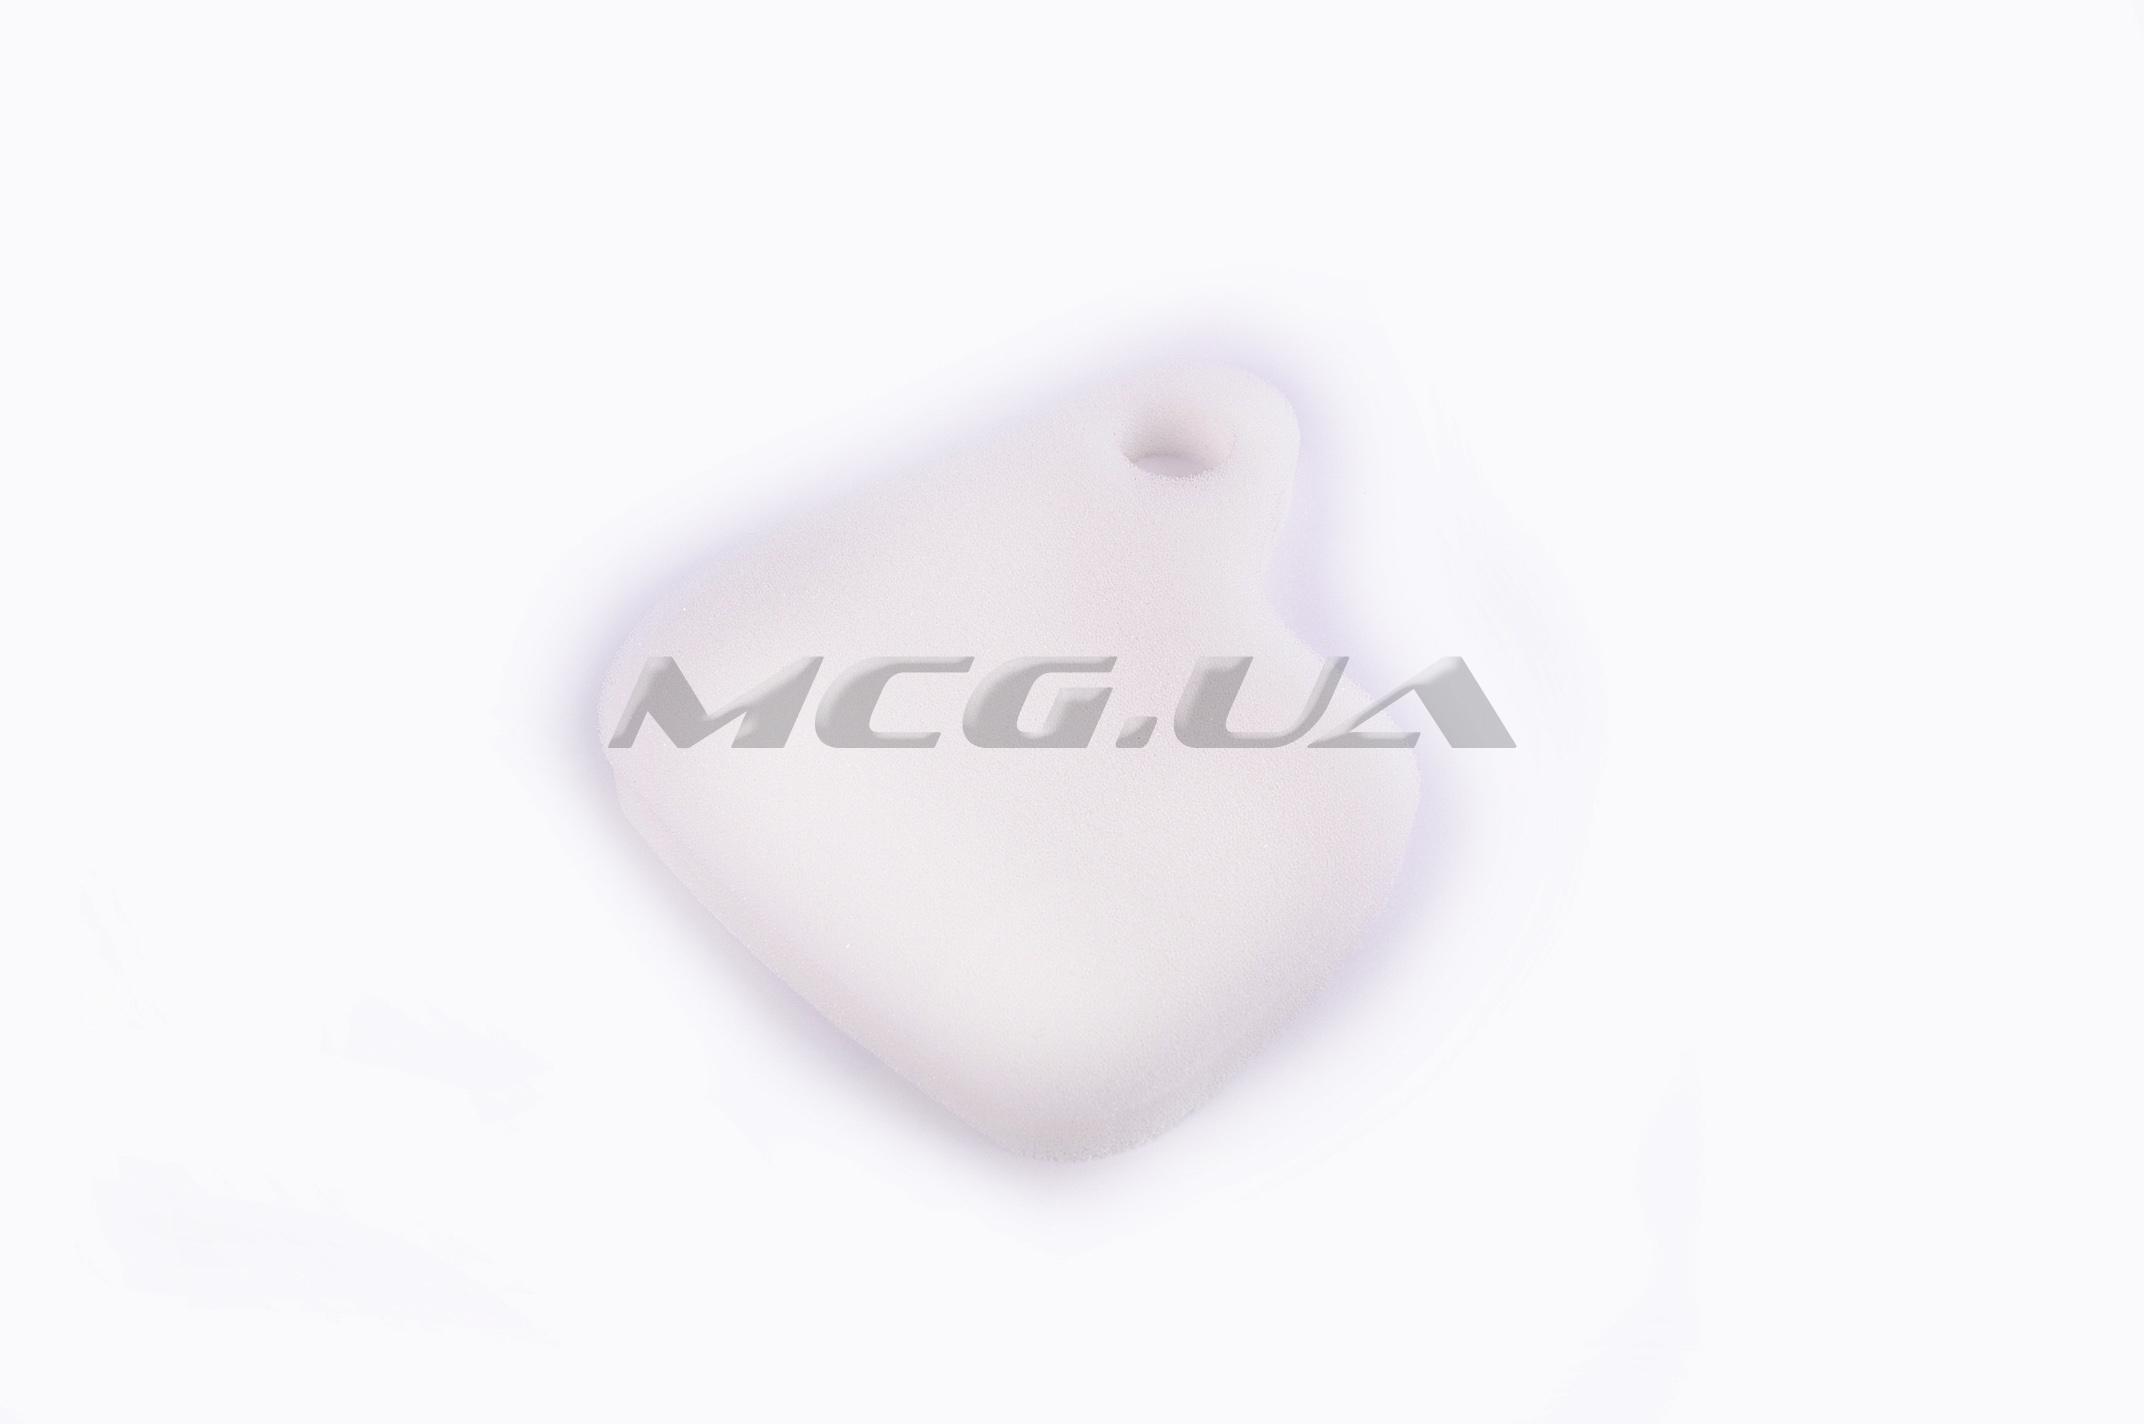 Элемент воздушного фильтра Yamaha CHAMP (поролон сухой) (белый)